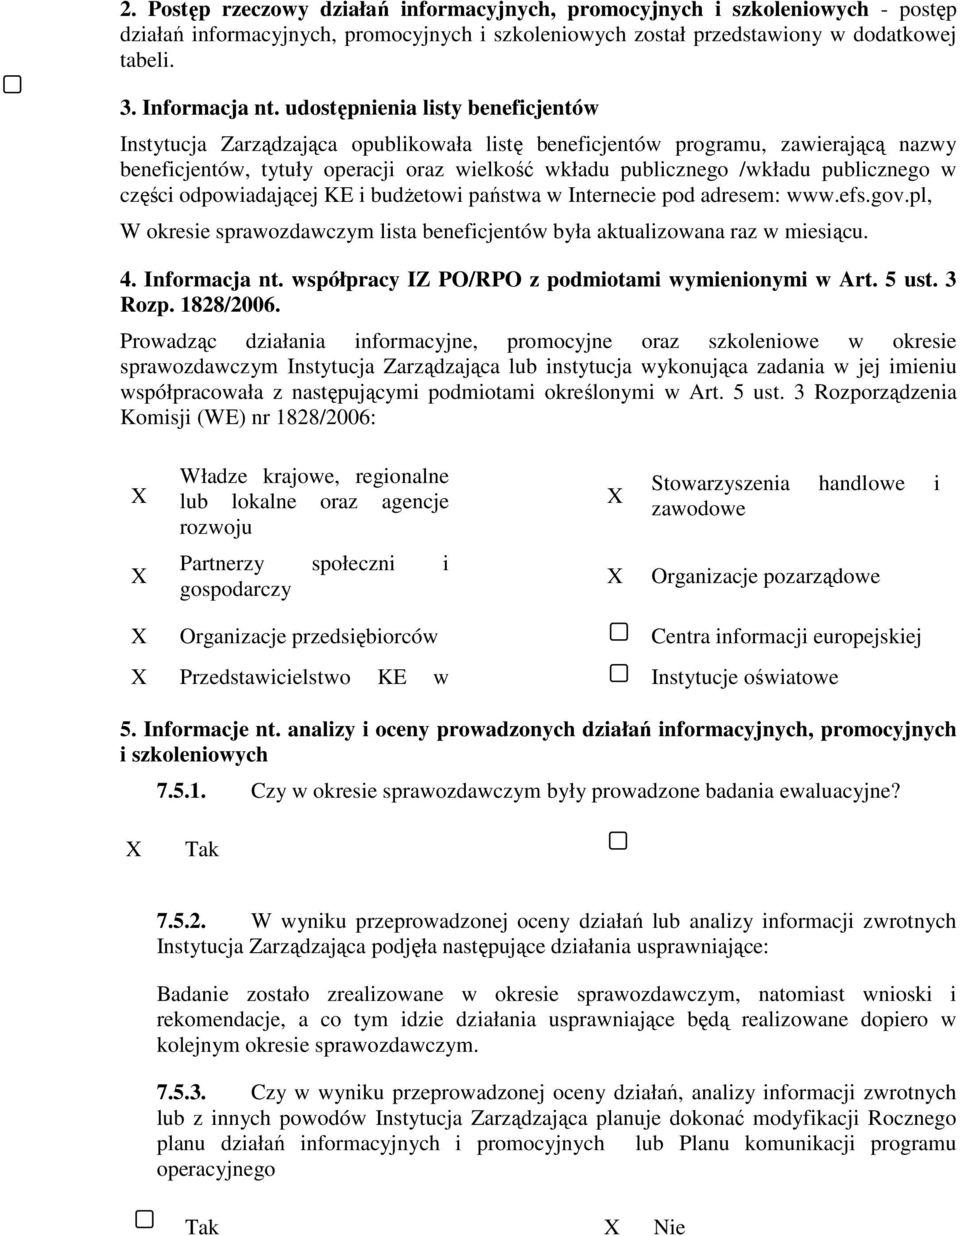 publicznego w części odpowiadającej KE i budŝetowi państwa w Internecie pod adresem: www.efs.gov.pl, W okresie sprawozdawczym lista beneficjentów była aktualizowana raz w miesiącu. 4. Informacja nt.